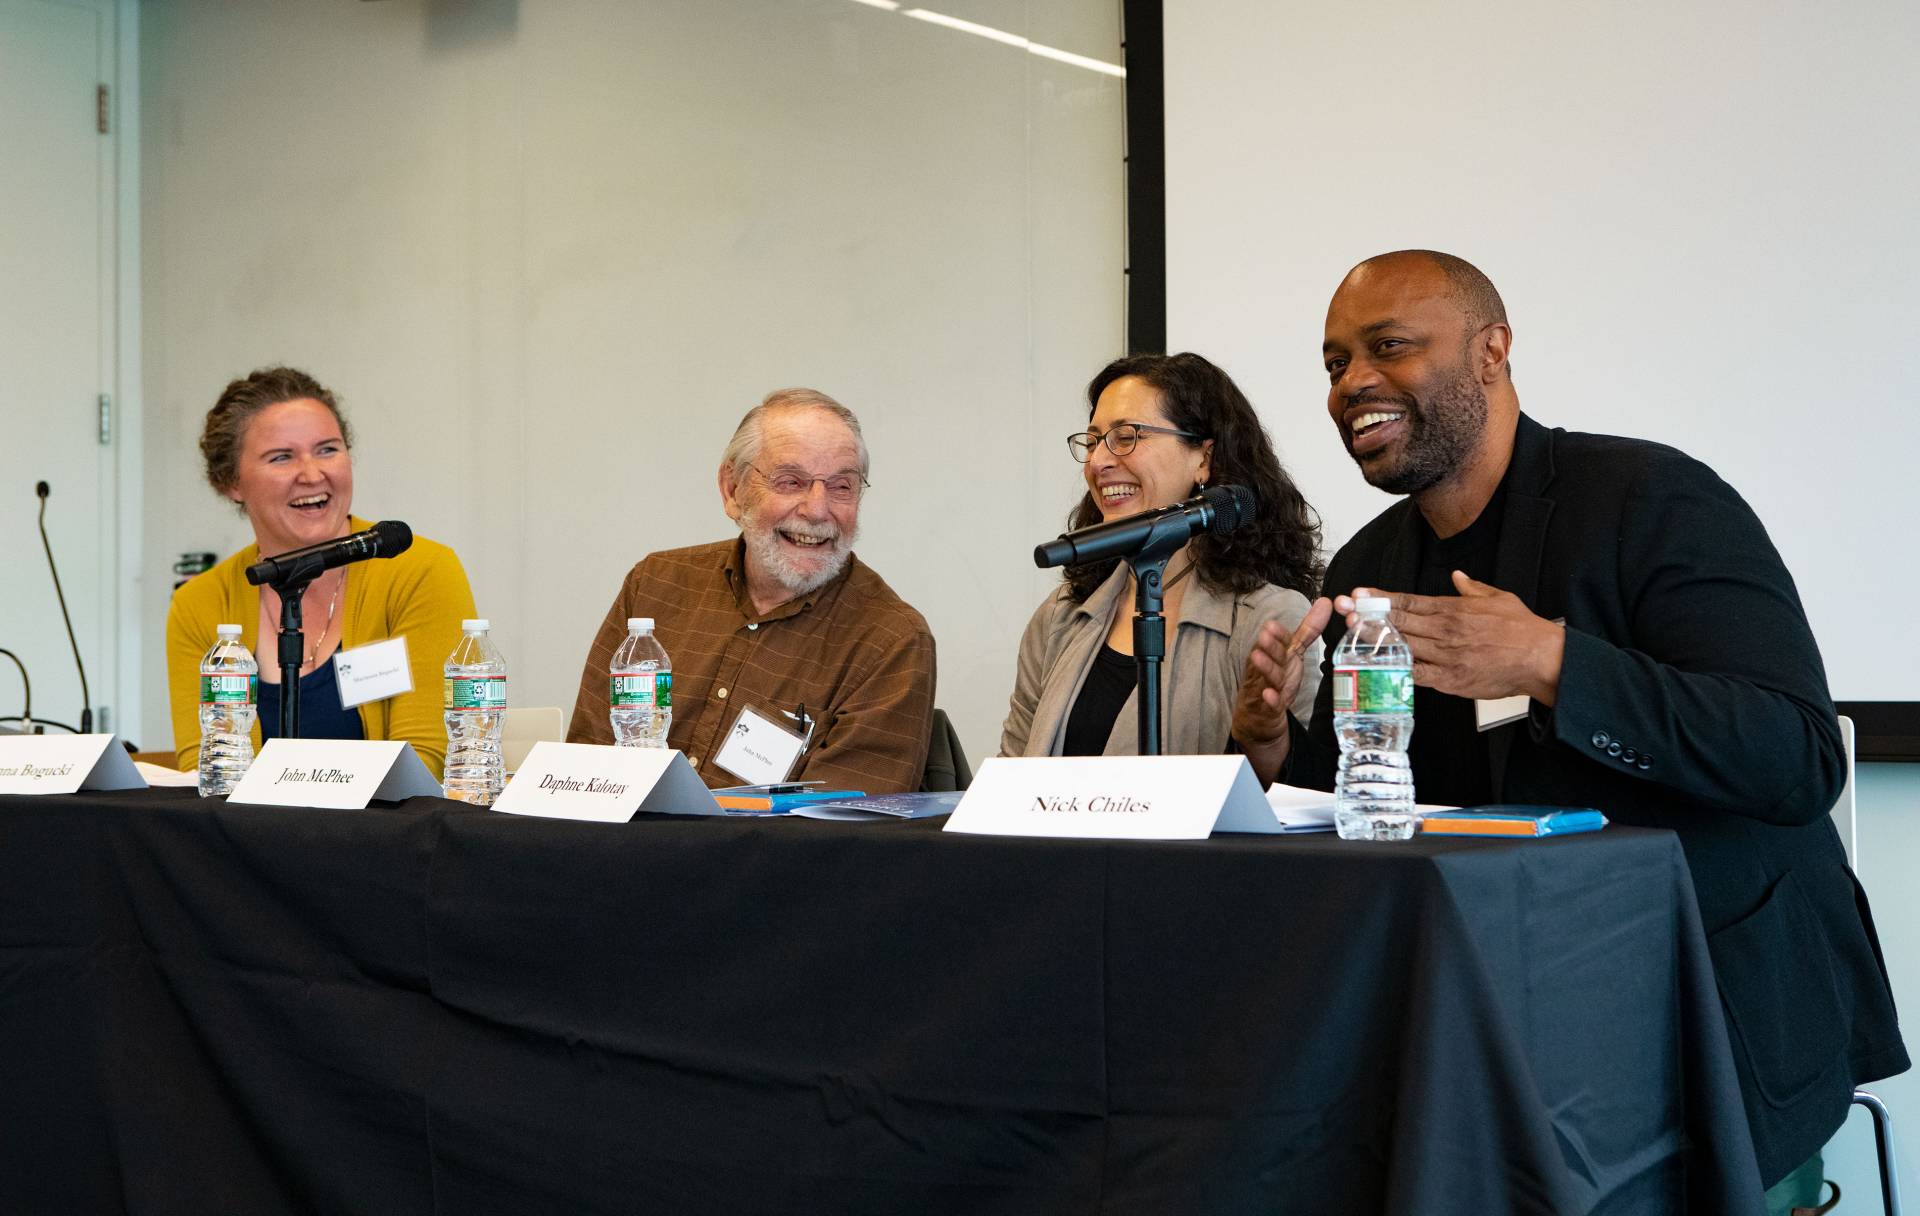 4 writers speak on a panel